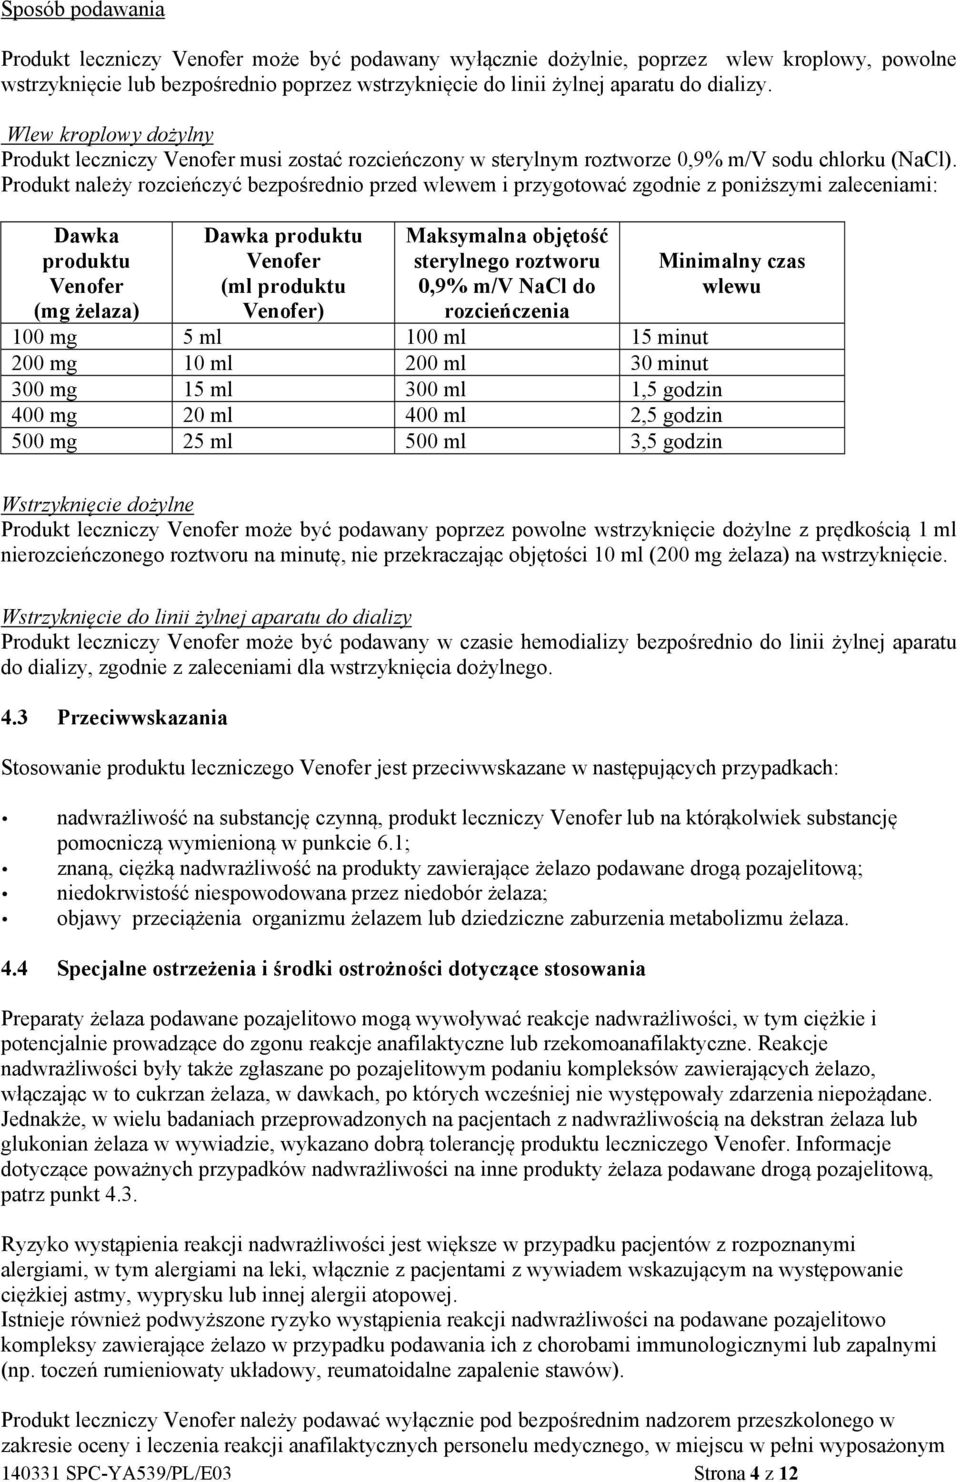 Charakterystyka Produktu Leczniczego - PDF Darmowe pobieranie